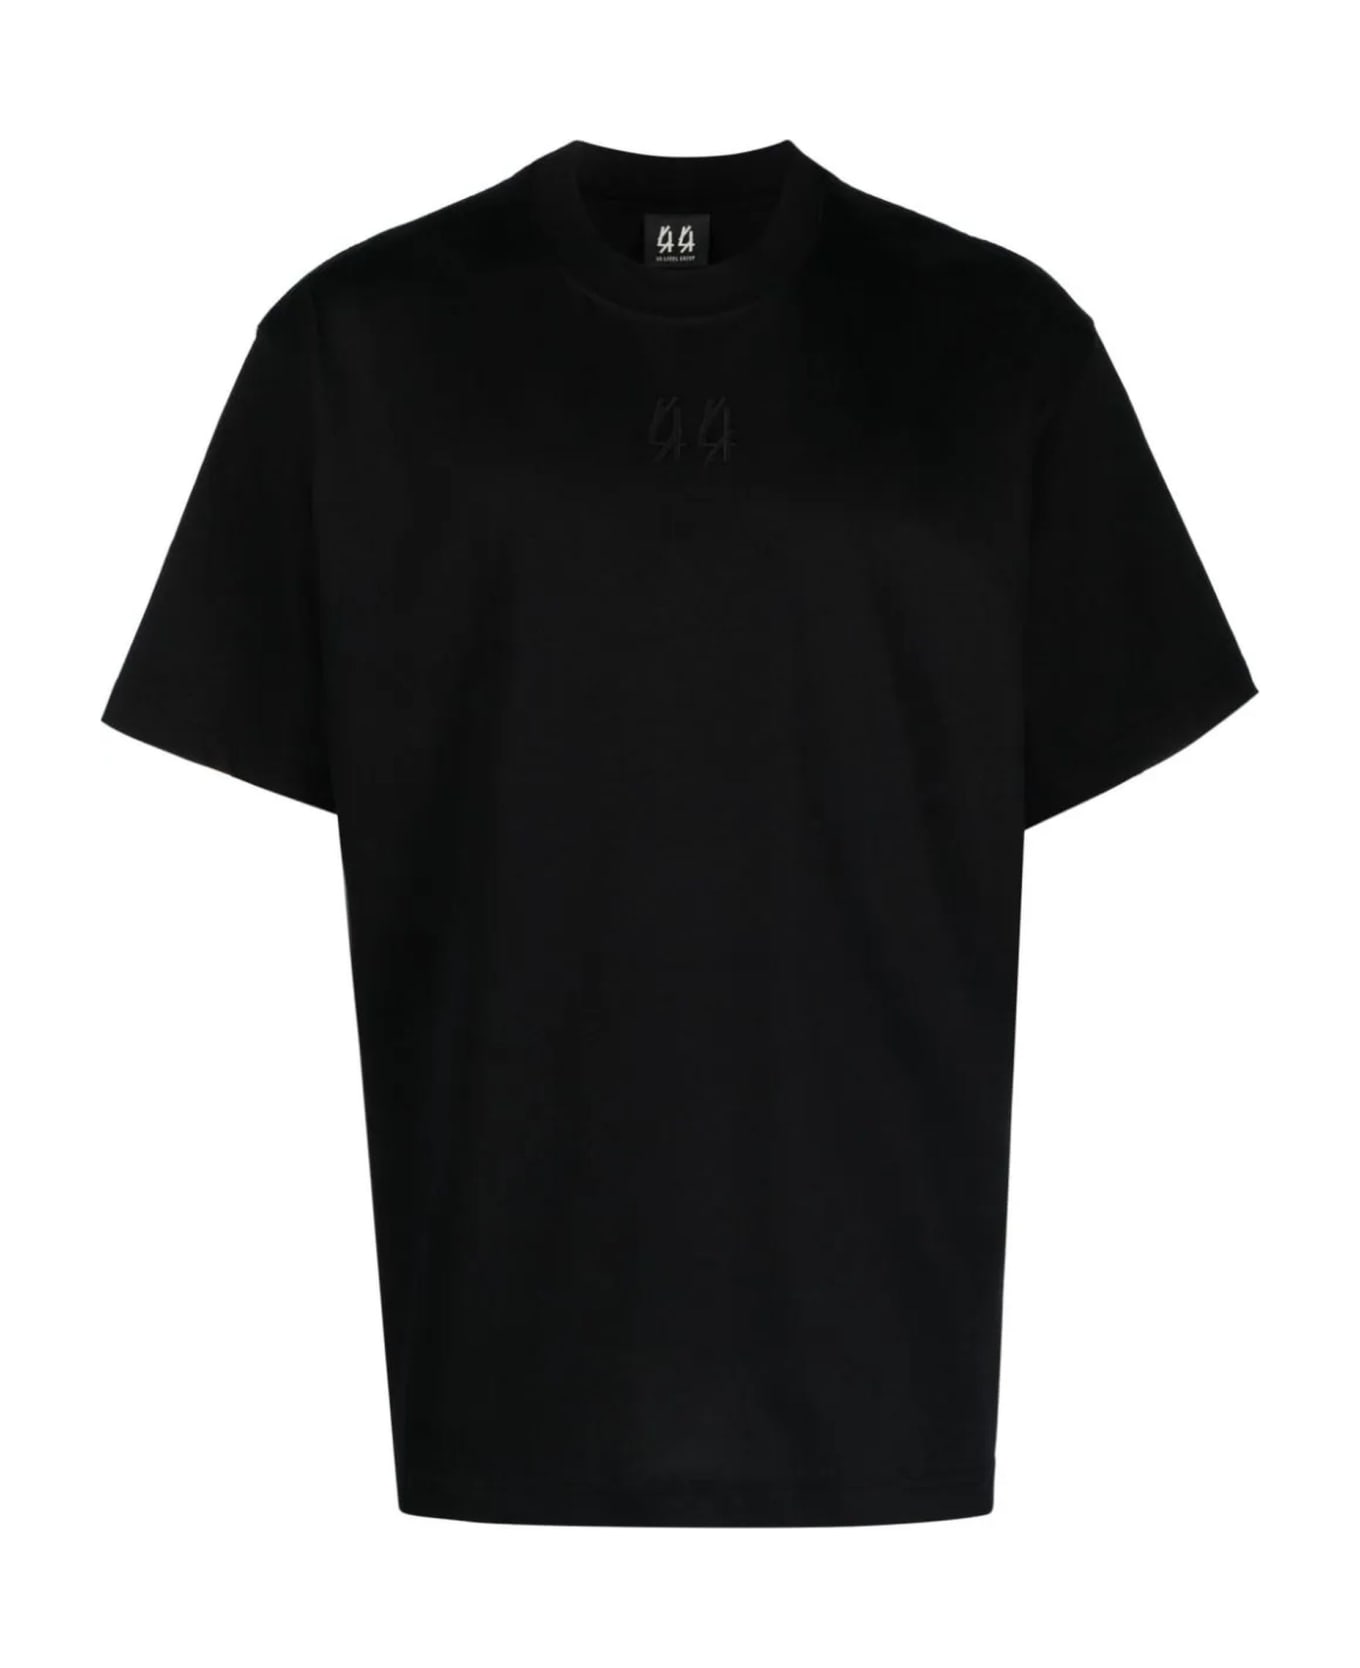 44 Label Group Black Cotton T-shirt シャツ